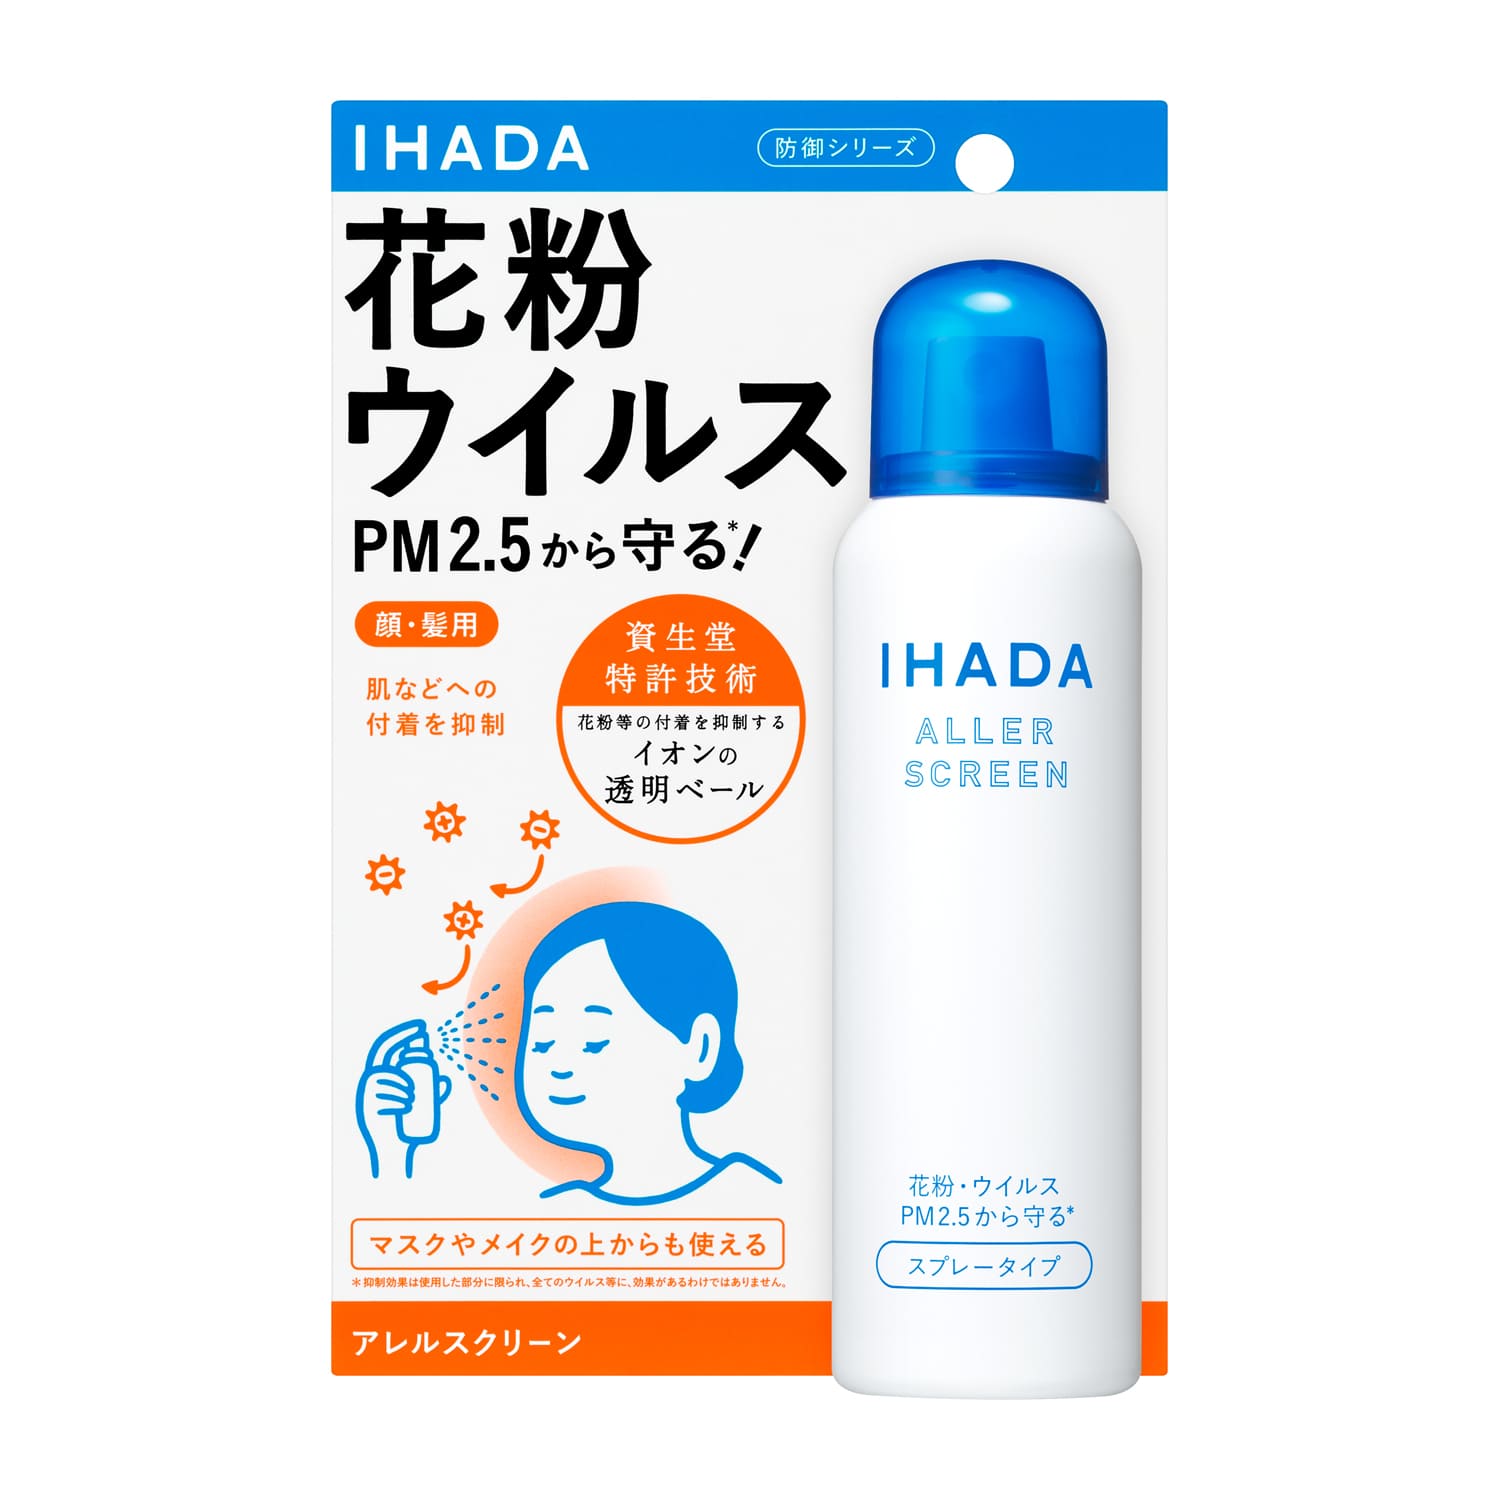 資生堂 イハダ アレルスクリーン EX 100g IHADA 花粉 PM2.5 ウイルス 花粉防御剤